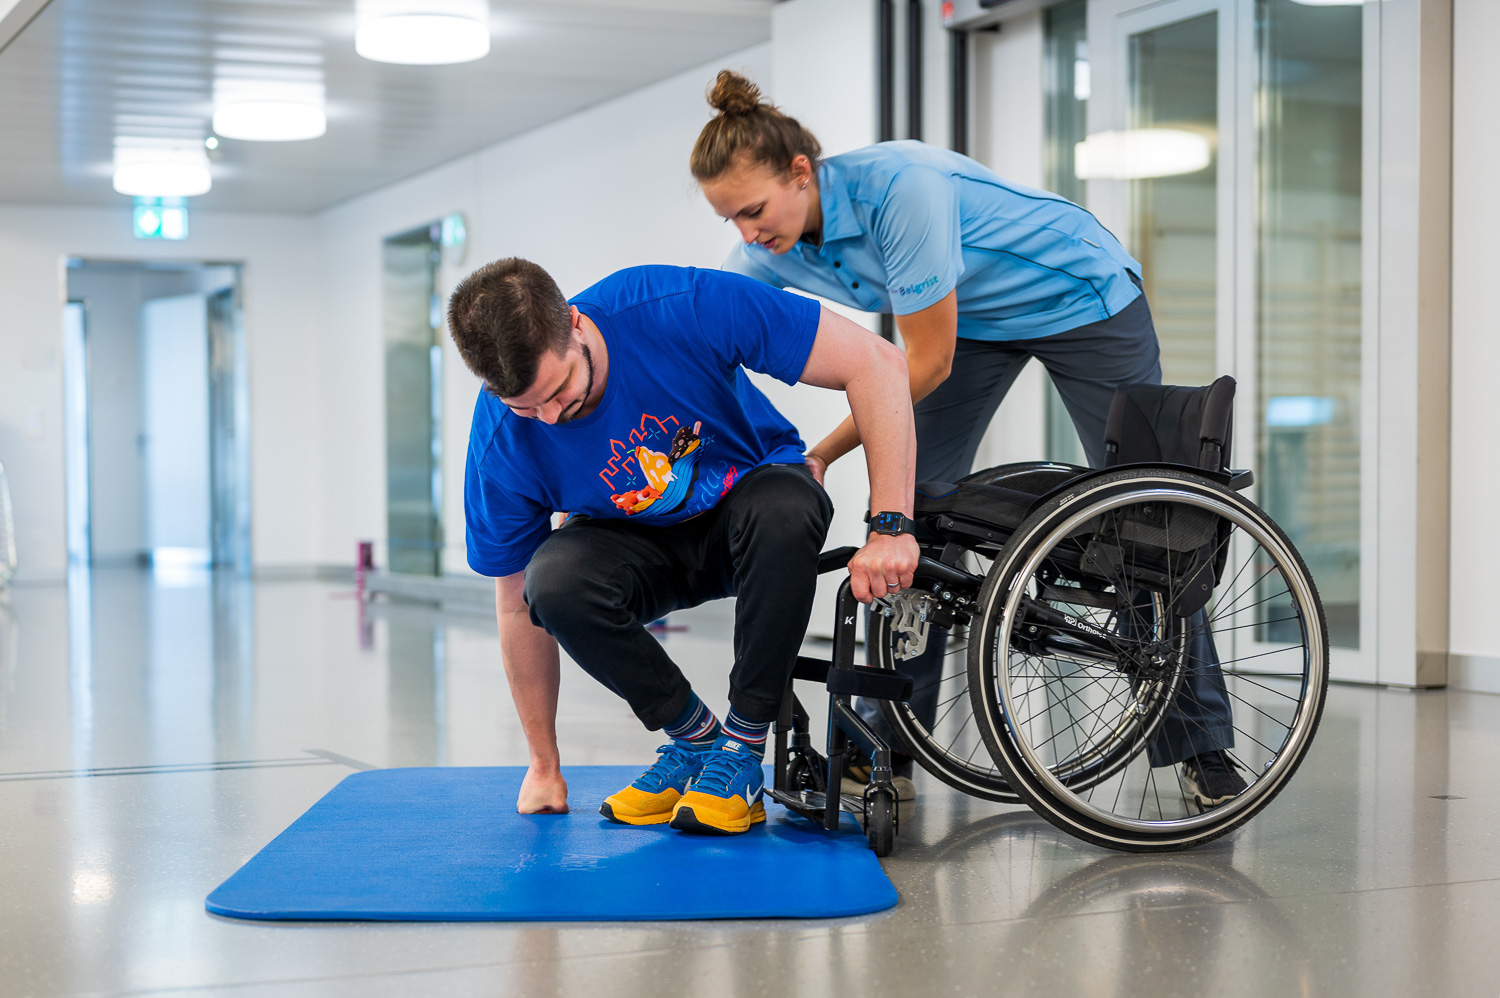 Querschnittgelähmter Patient versucht rückwärts von einer blauen Matte, die am Boden liegt, in den Rollstuhl zu steigen. Die Physiotherapeutin hilft ihm und hält ihn am Becken fest.